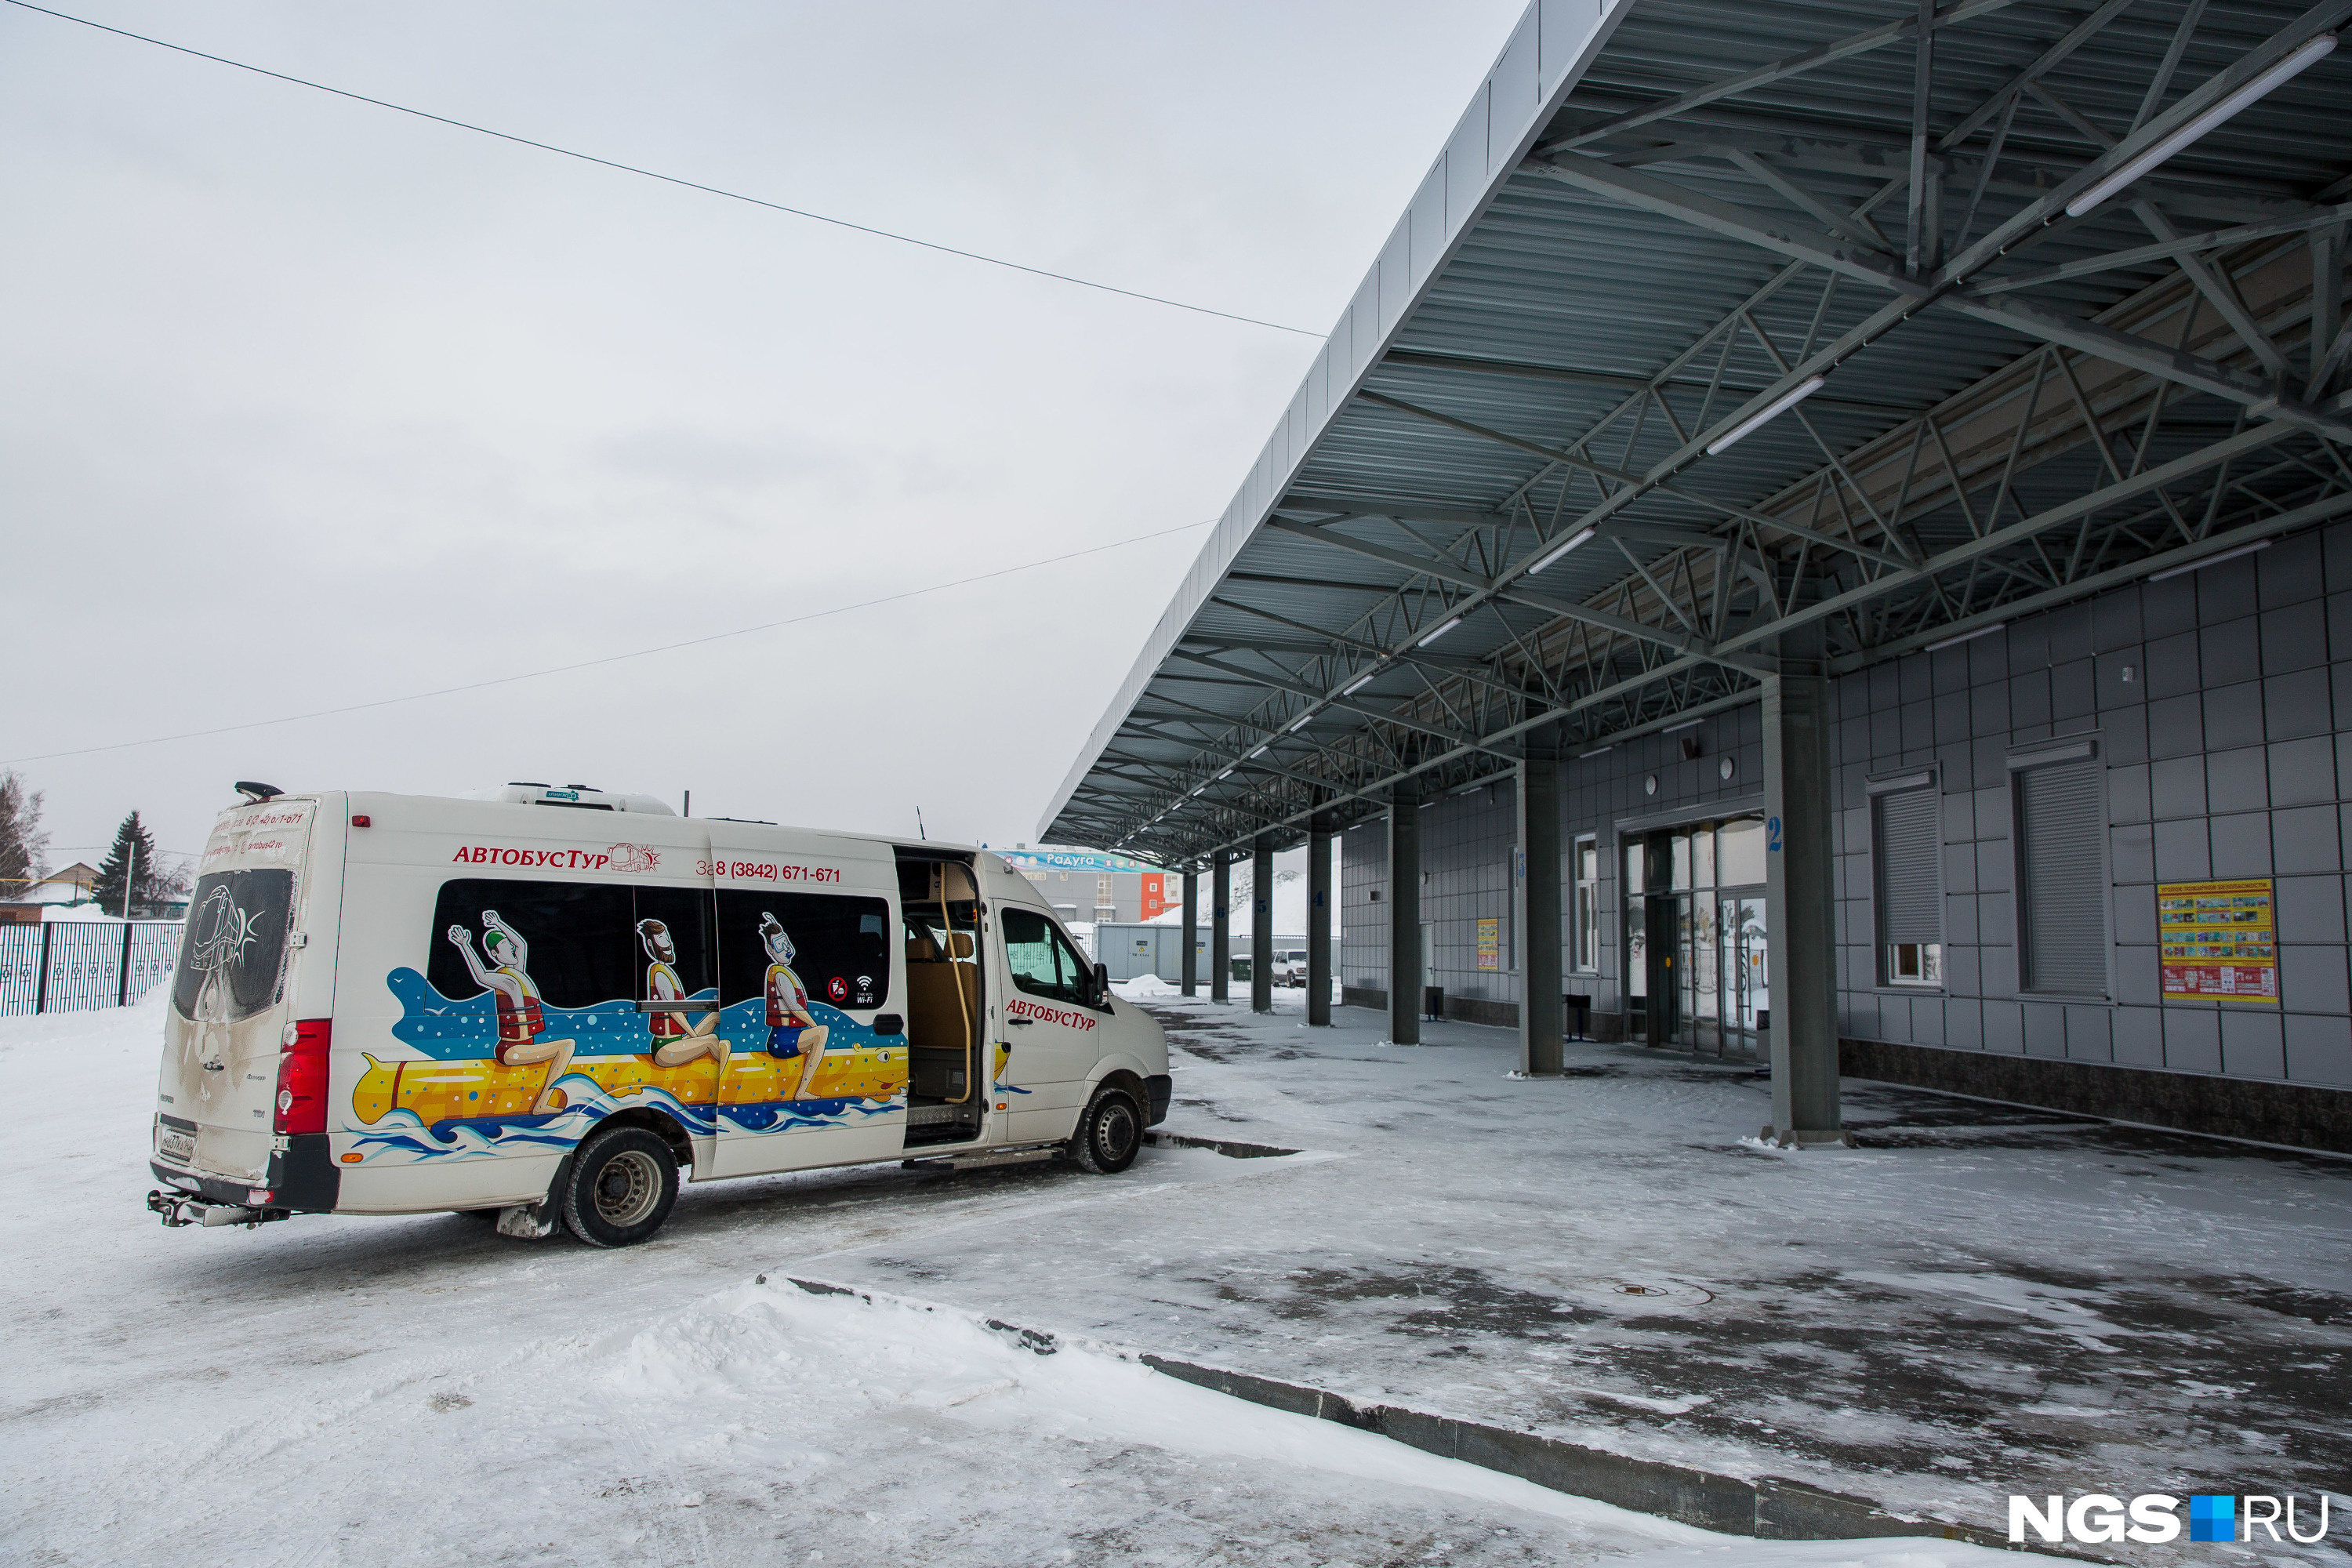 С 1 февраля автовокзал Главный начал отправлять рейсы в Казахстан: Караганду, Павлодар, Темиртау<br>